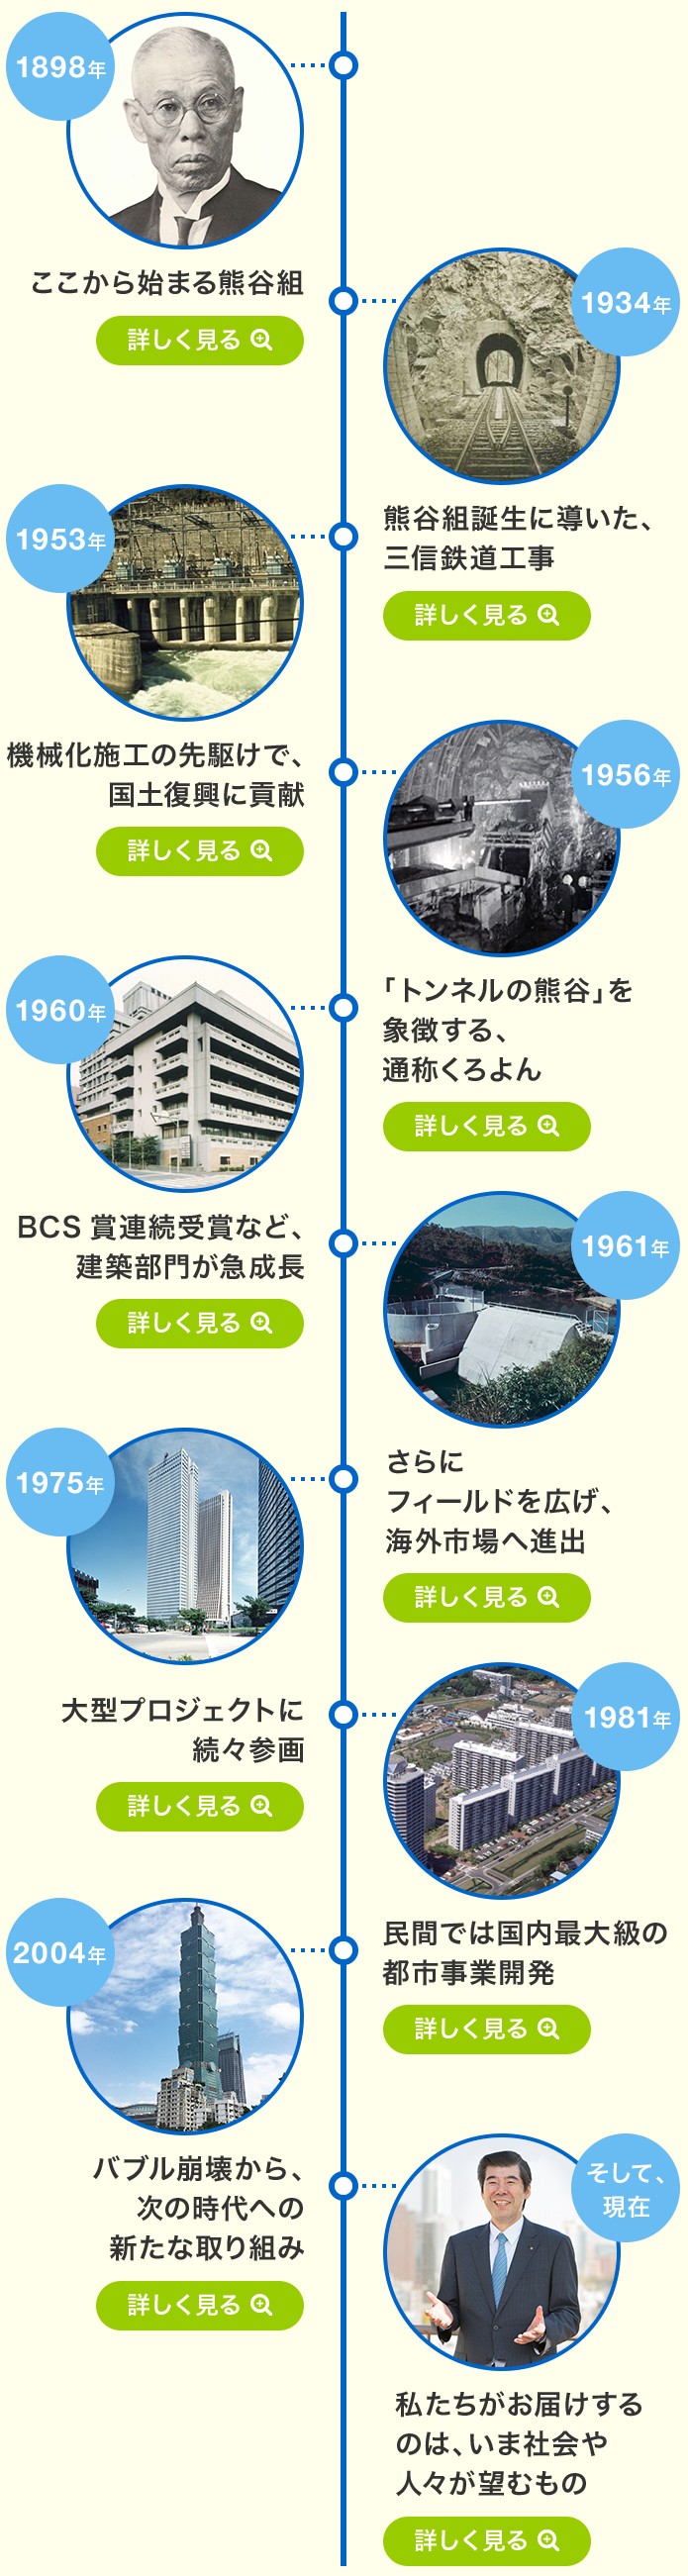 熊谷組の歴史マップ